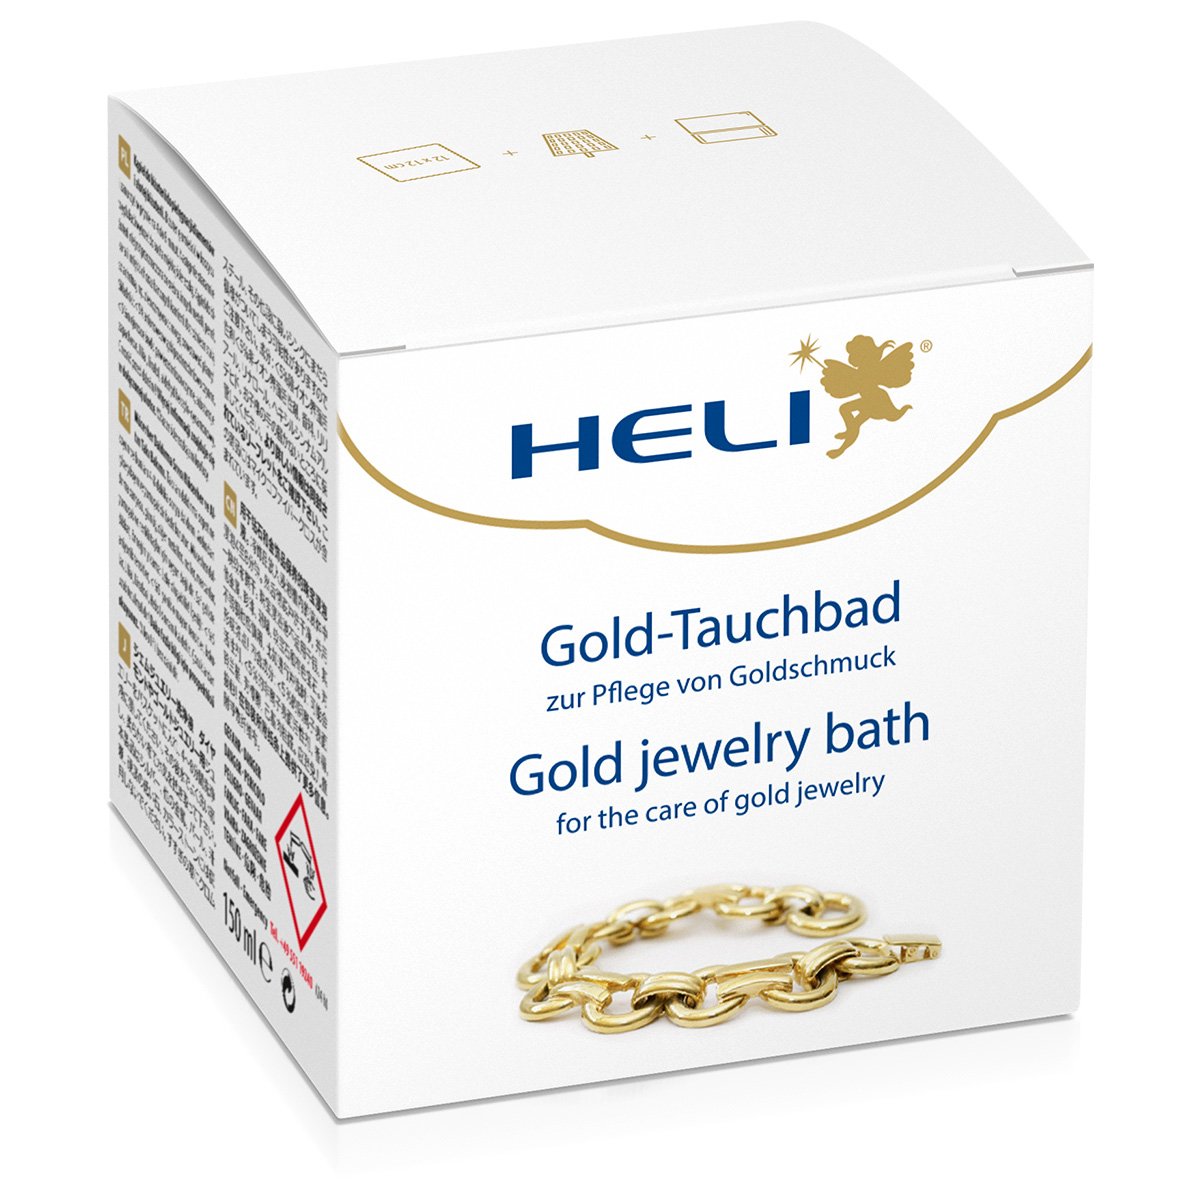 Heli Goldtauchbad mit Waschkorb und Pflegetuch, Juweliersverpackung, 150 ml